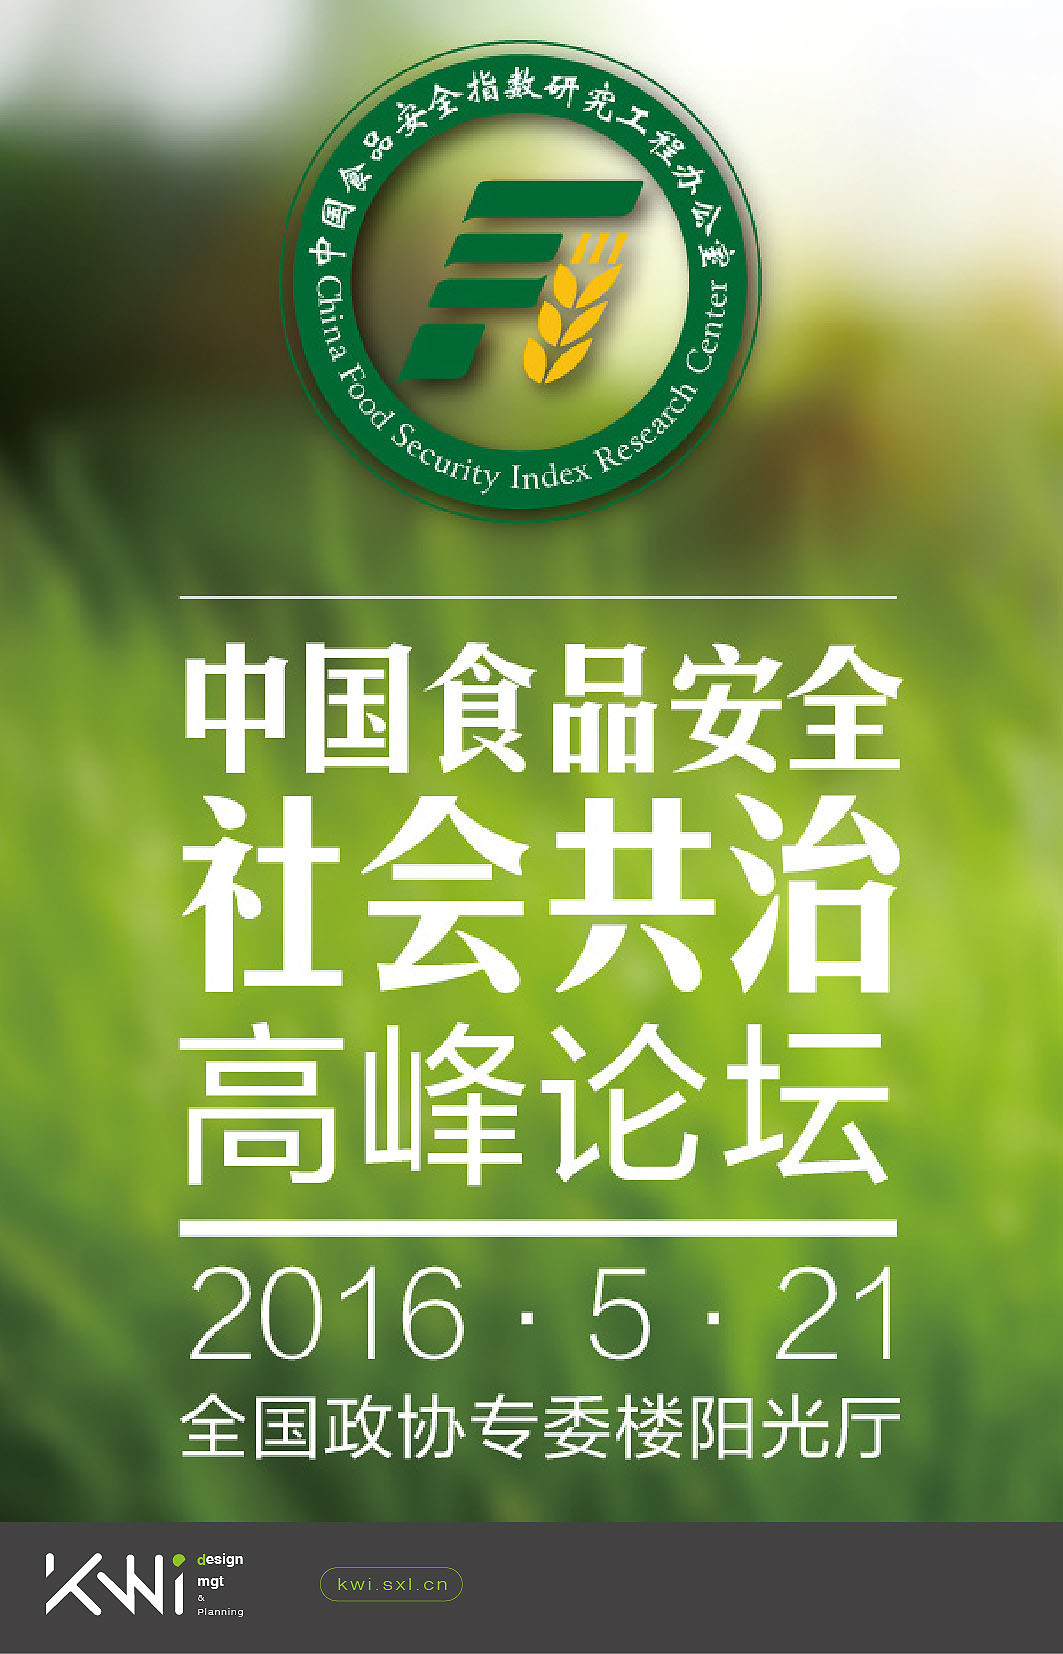 中国食品安全指数研究办公室logo/VI设计图4